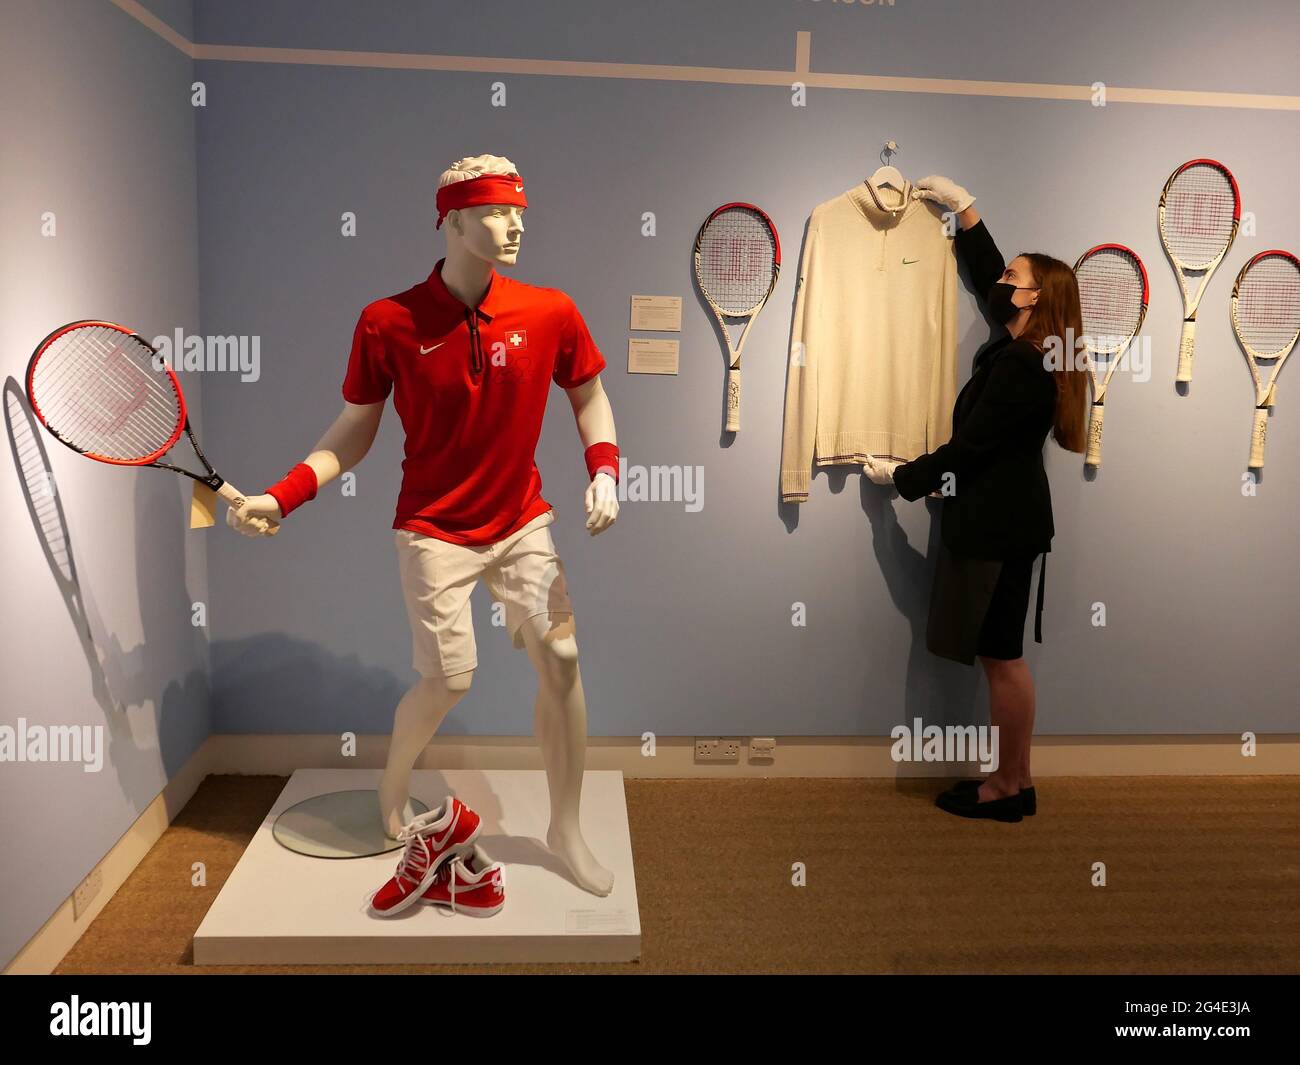 20 Lose von seinen Grand Slam Siegen wurden am 23. Juni in London versteigert. Von einem Schläger, der in seinem sagenumwobenen Kampf mit Rafael Nadal in Wimbledon im Jahr 2007 verwendet wurde, bis zu den mit Lehm bedeckten Schuhen nach seinem Sieg bei Roland Garros im Jahr 2009 – diese Gegenstände bieten einen Blick in einige der kultigsten Momente des Sports. Der entsprechende Online-Verkauf, der vom 23. Juni – 13. Und 14. Juli stattfindet, zeichnet Federers unglaubliche Karriere von den frühen 2000er Jahren bis 2021 nach und bietet Fans auf der ganzen Welt die Möglichkeit, ein bedeutsames Objekt von seiner bisherigen Reise zu besitzen. Stockfoto